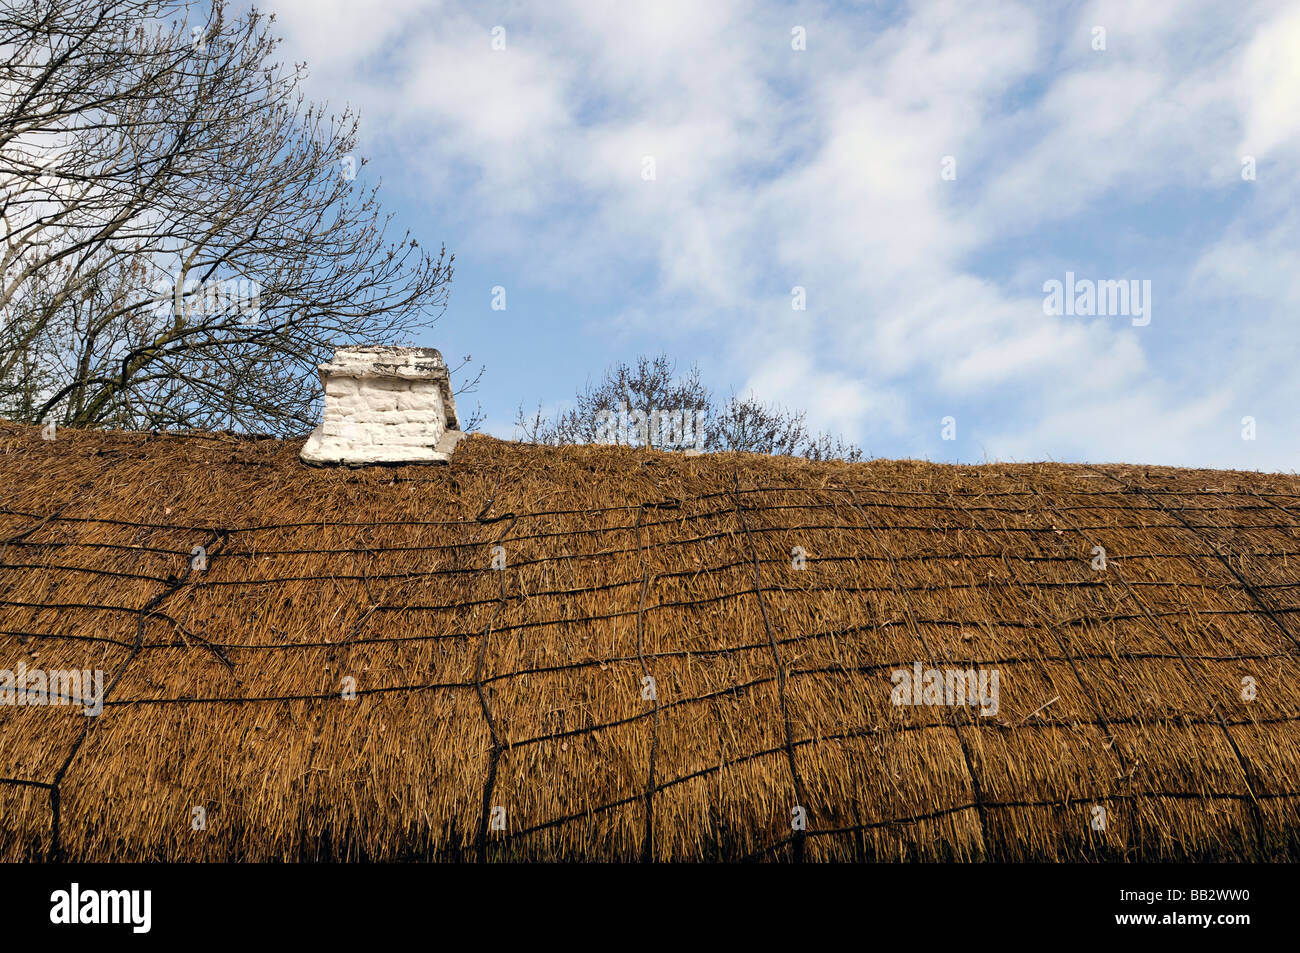 Tetto di Paglia cottage close up dettaglio di paglia con camino bianco blu cielo cielo nuvole bianche Irlanda Foto Stock